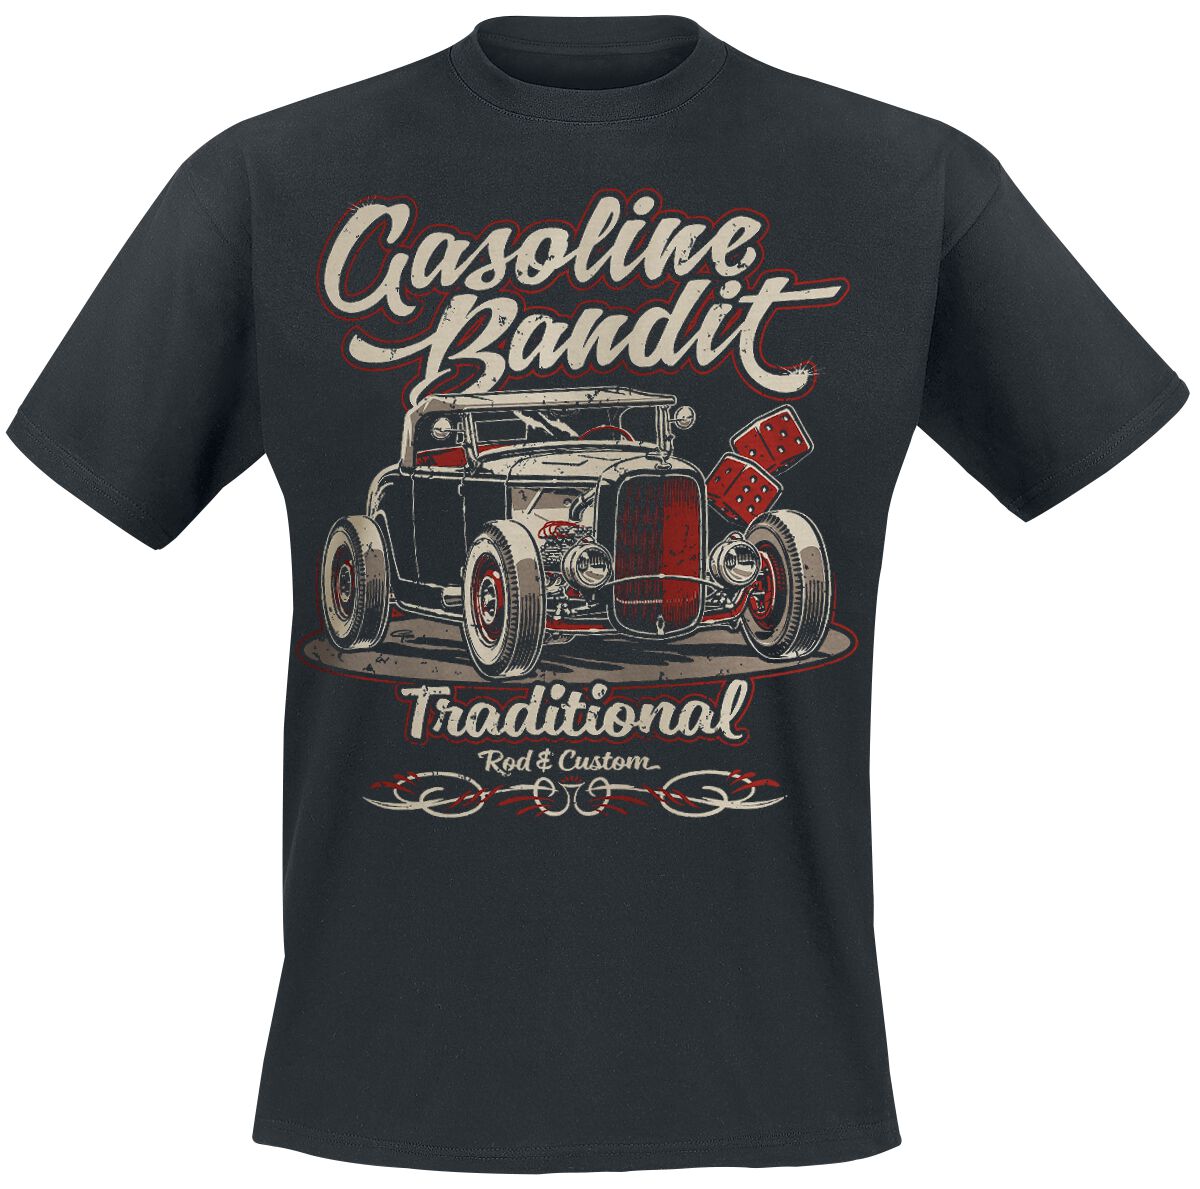 Gasoline Bandit Traditional T-Shirt schwarz in XL